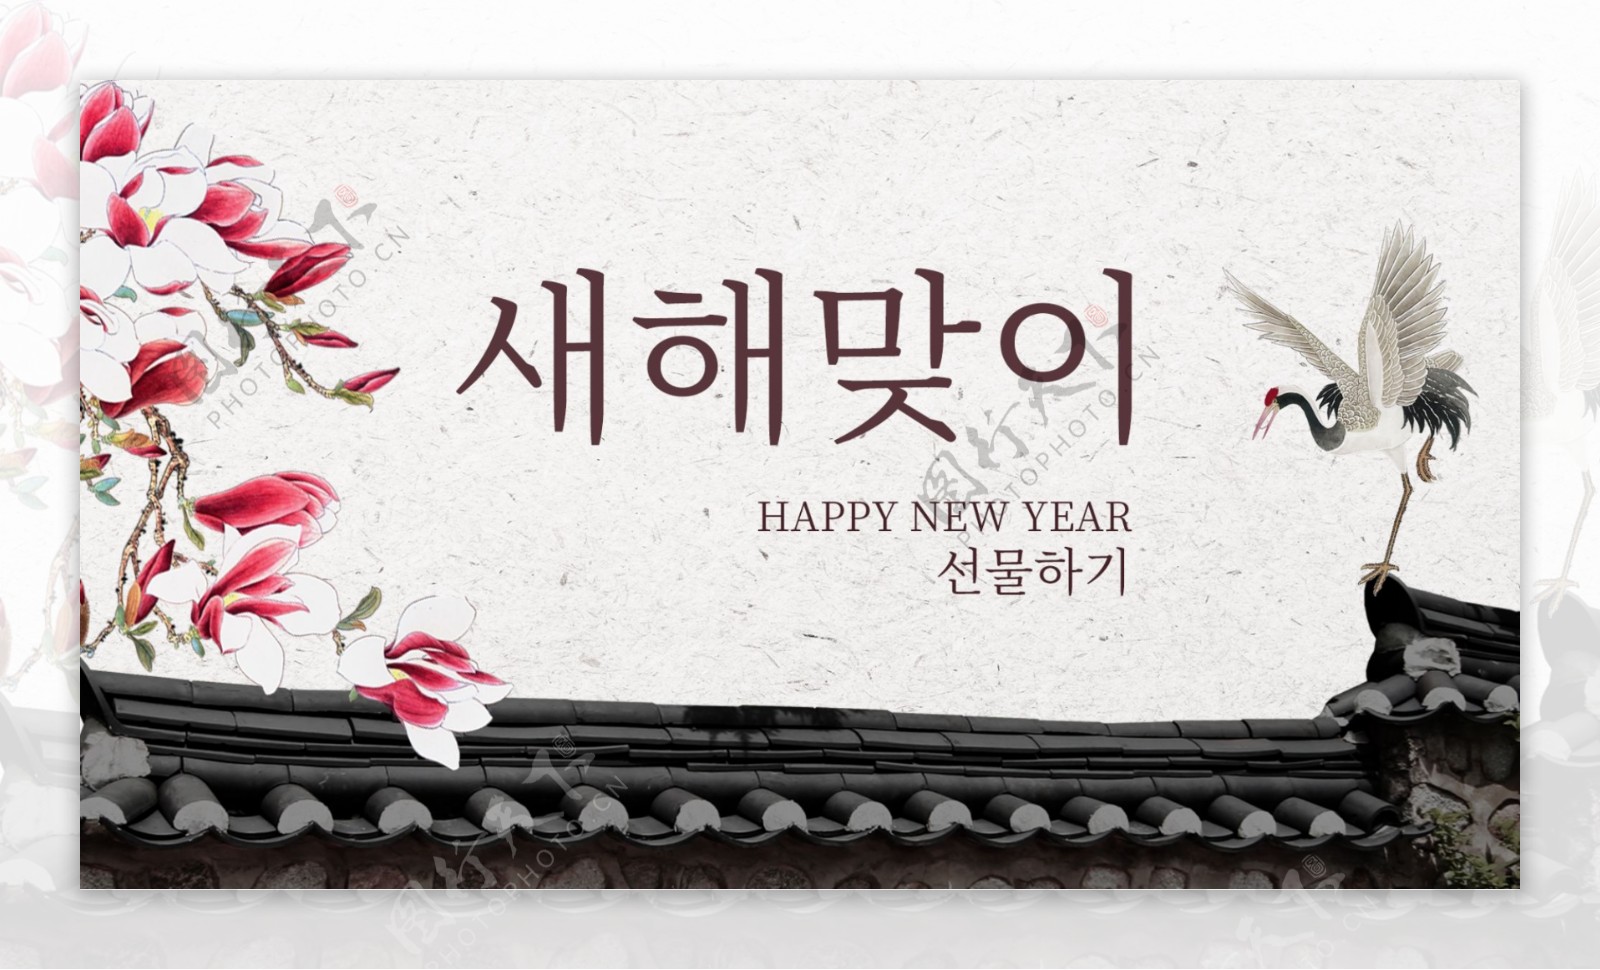 浅色传统韩国风格新年礼拜